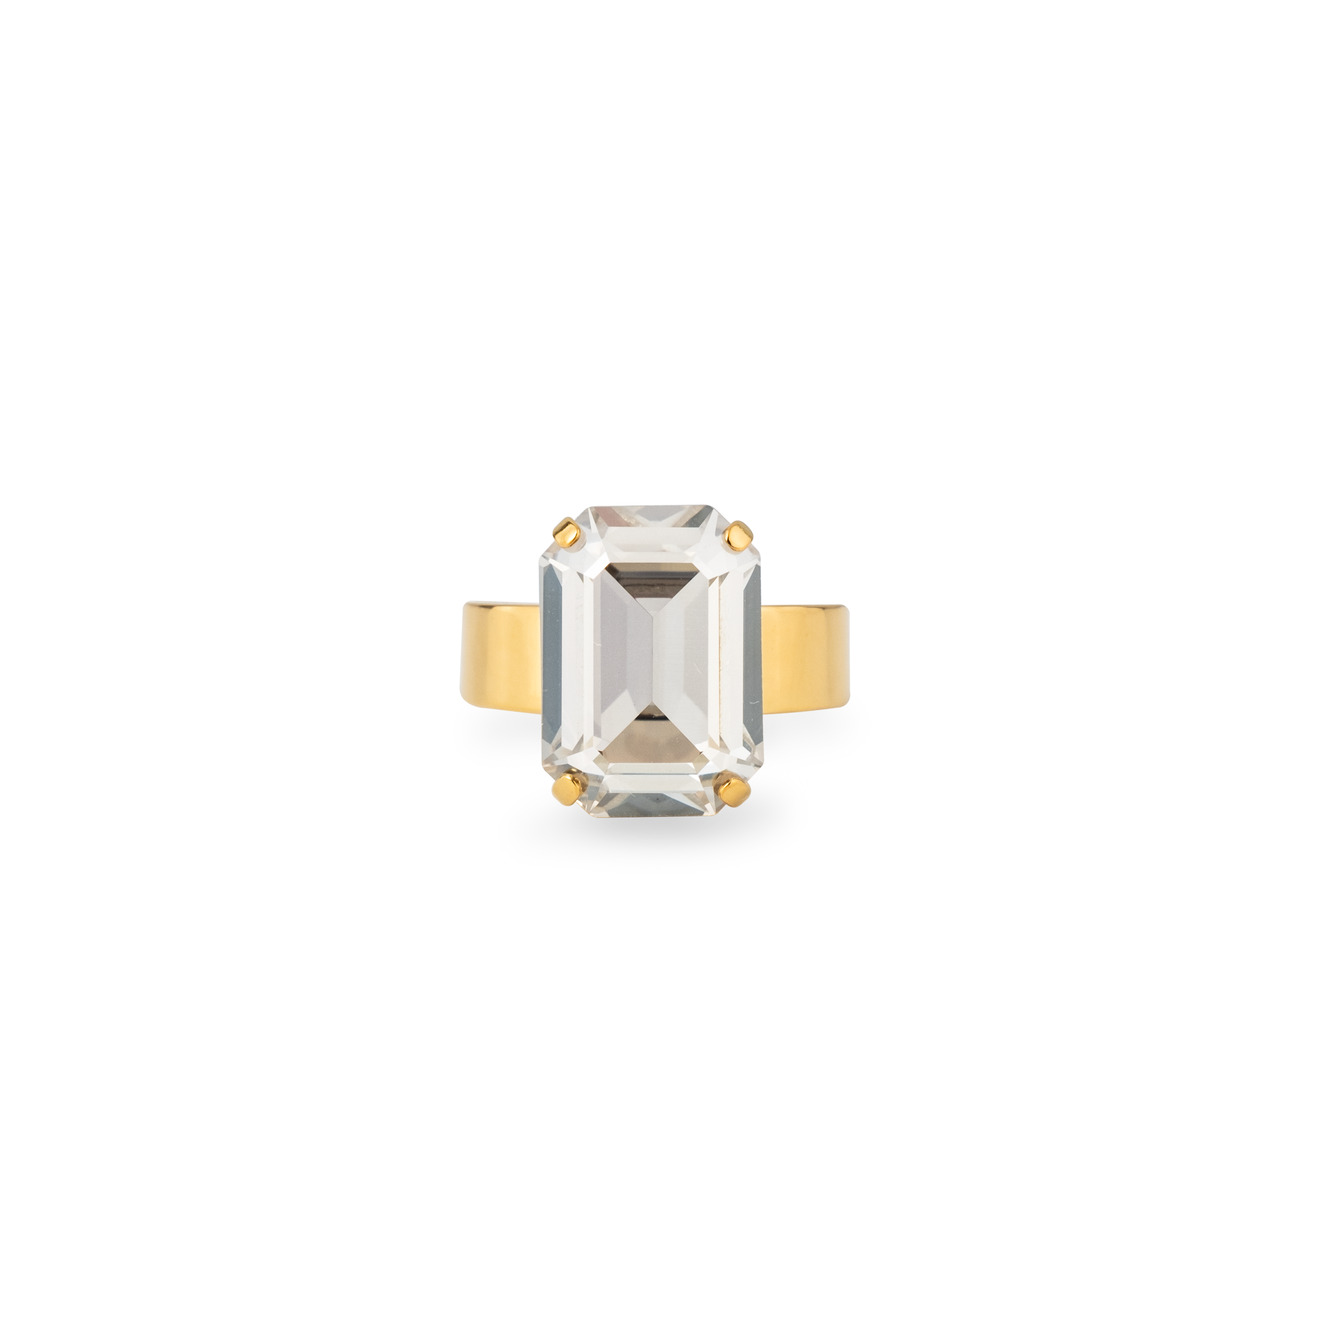 Phenomenal Studio Позолоченное кольцо с регулируемым размером Octagon Gold phenomenal studio позолоченное кольцо wave ring с кристаллами